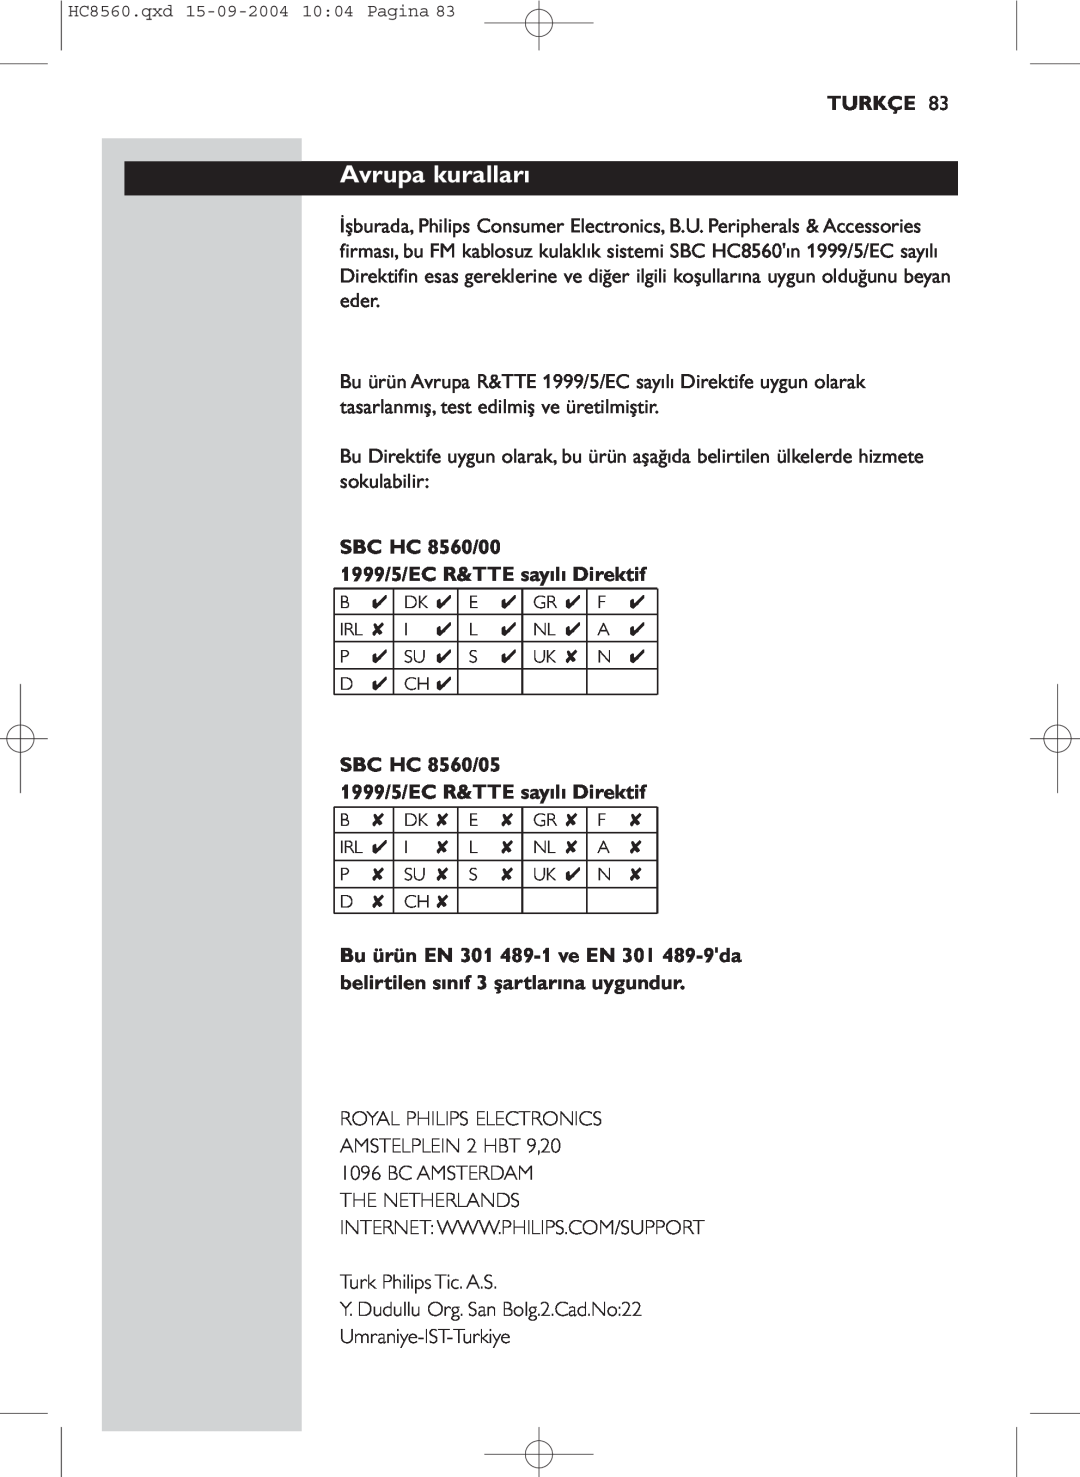 Philips manual Avrupa kuralları, Turkçe, SBC HC 8560/00 1999/5/EC R&TTE sayılı Direktif 